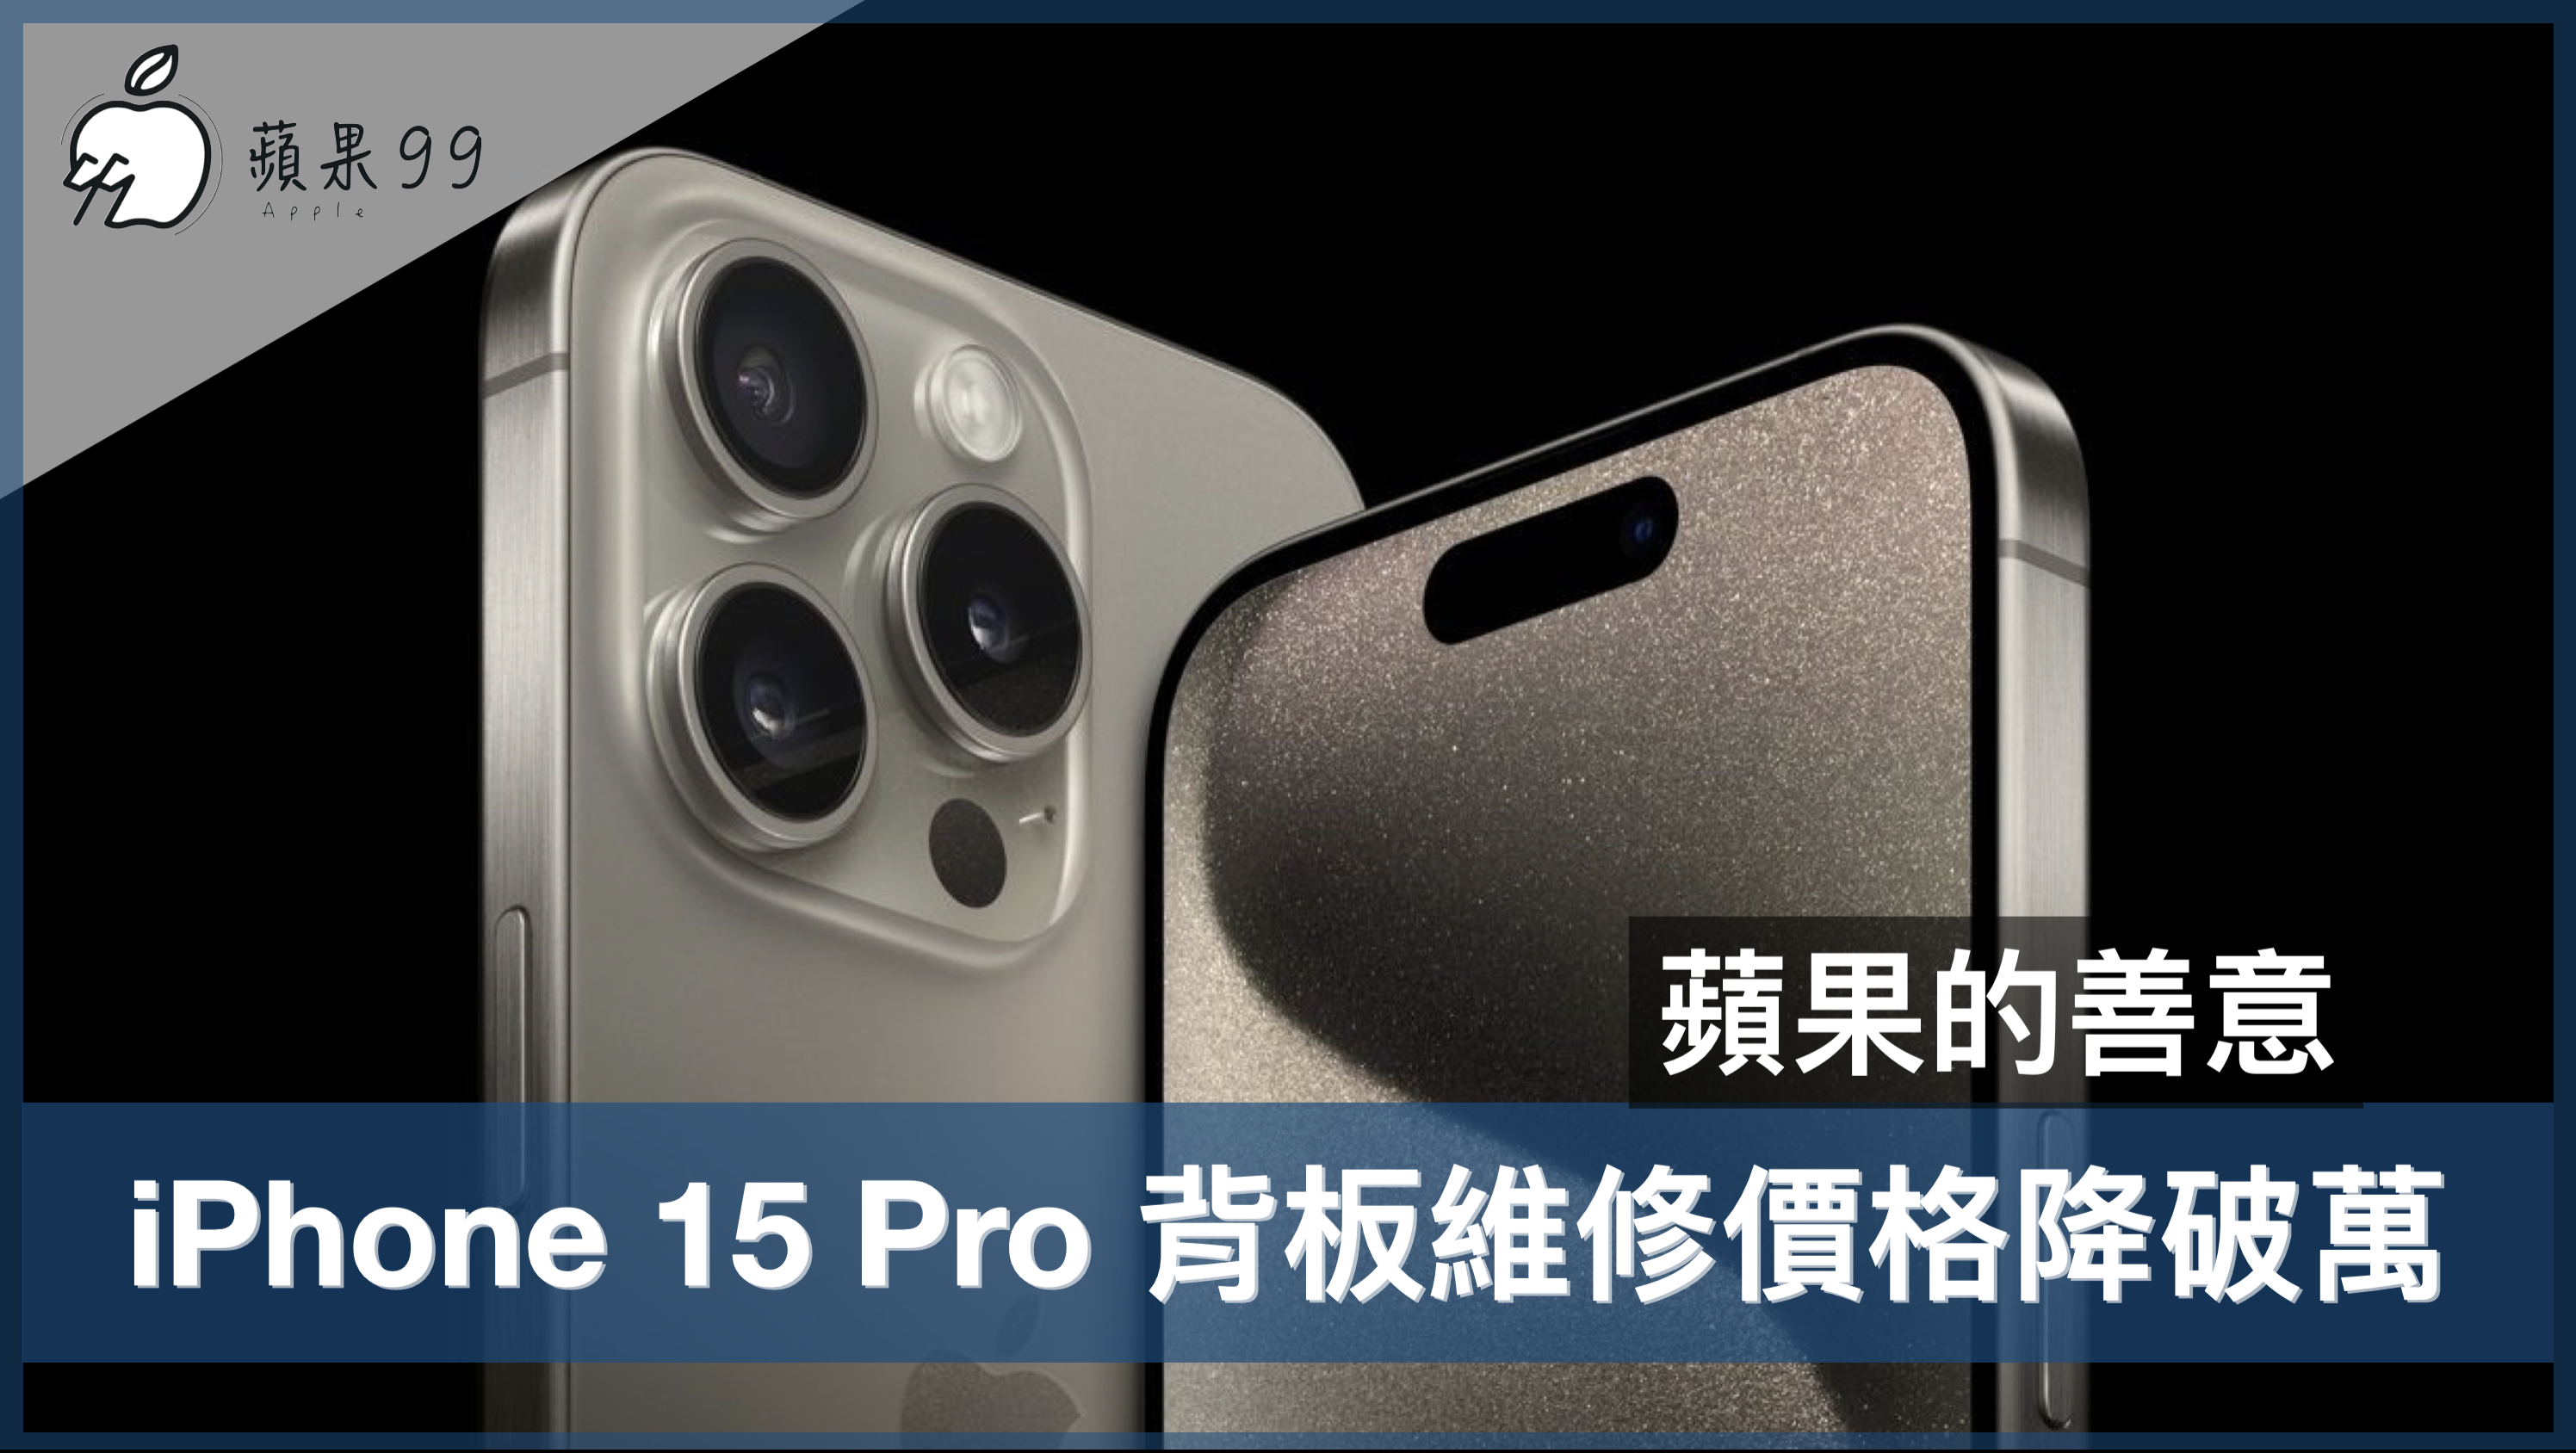 iPhone 15 Pro 背板維修價格降破萬